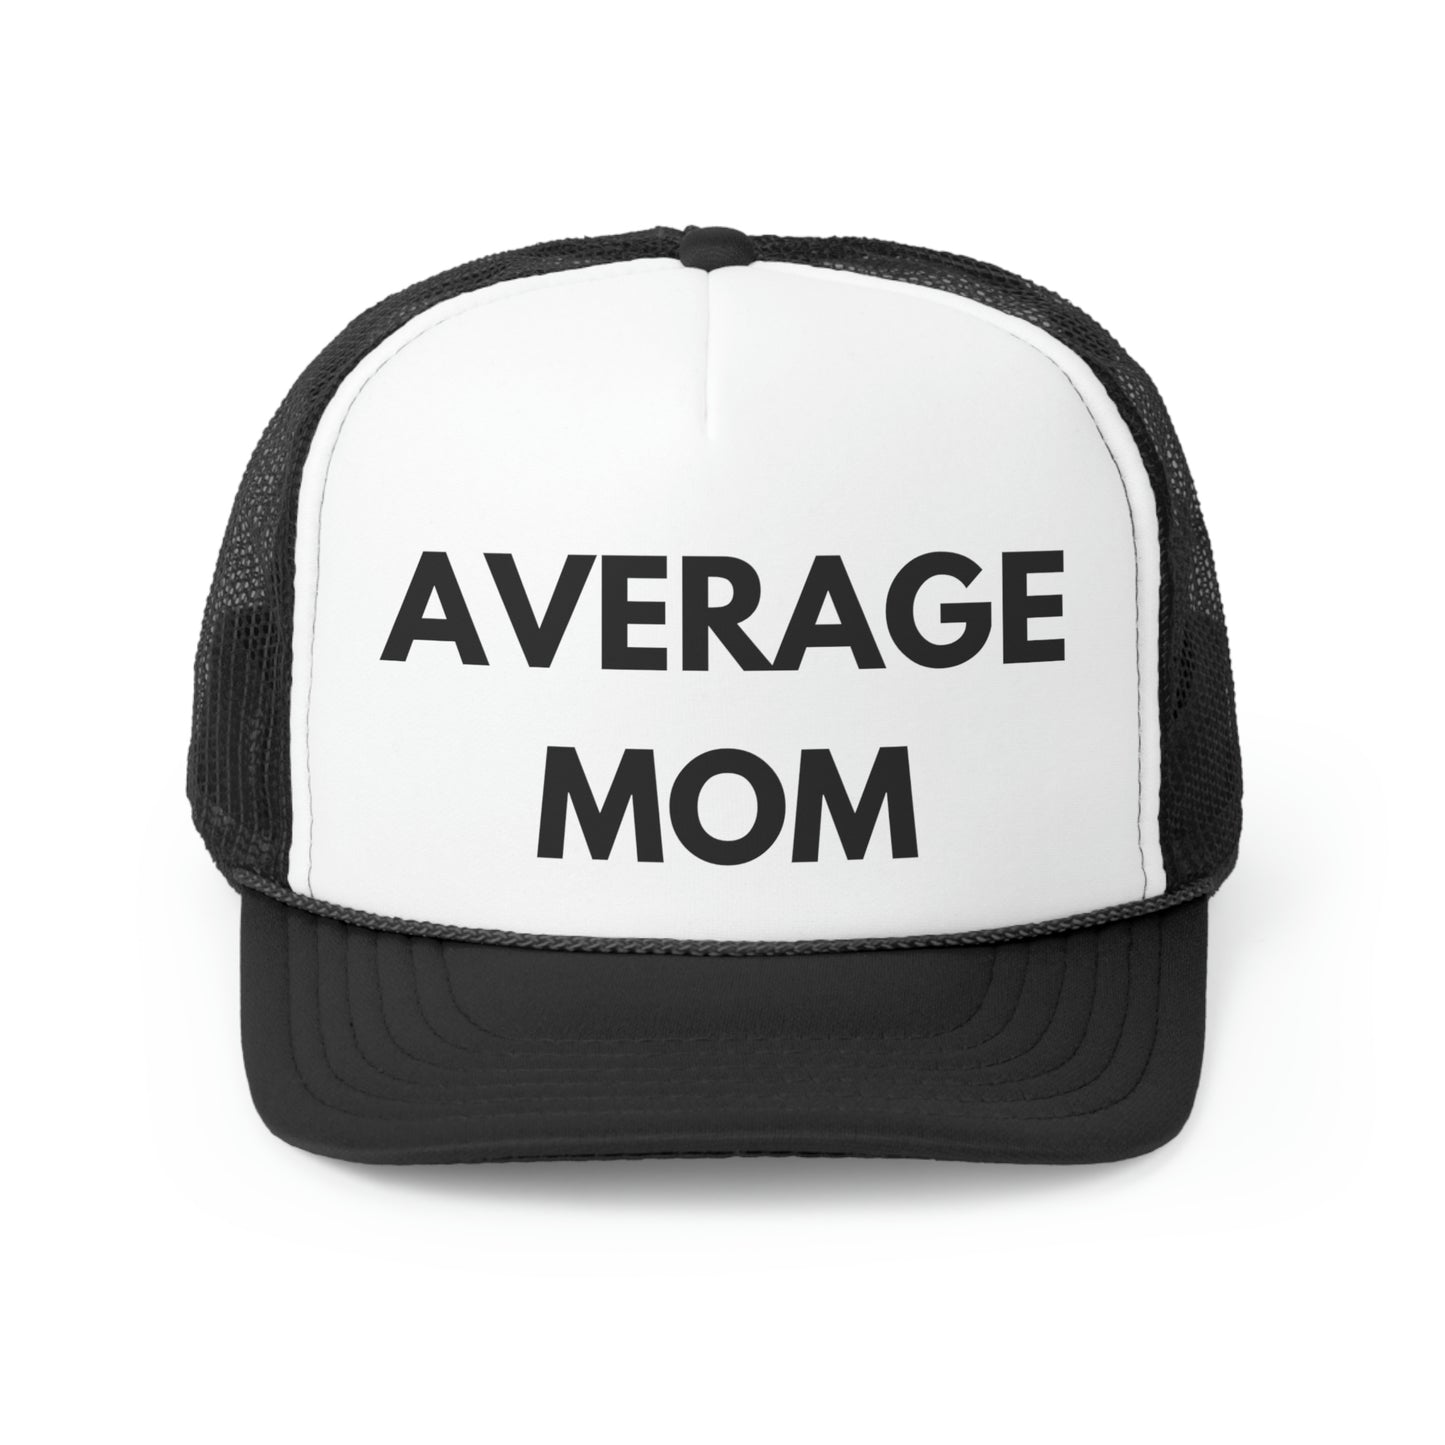 Average Mom